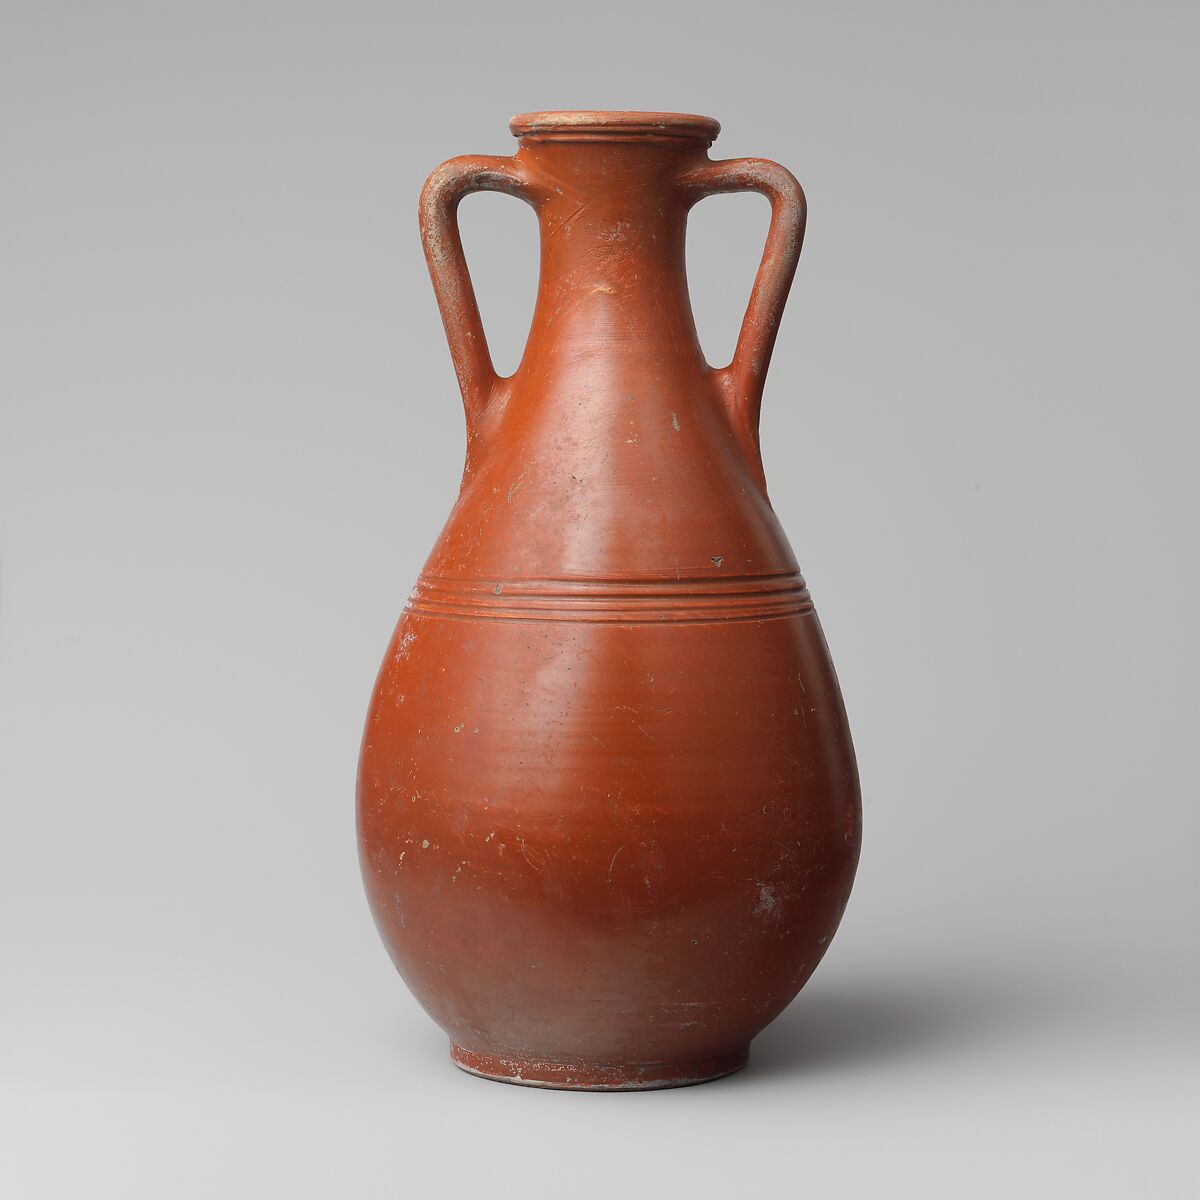 Terracotta amphora (jar), Terracotta, Roman 